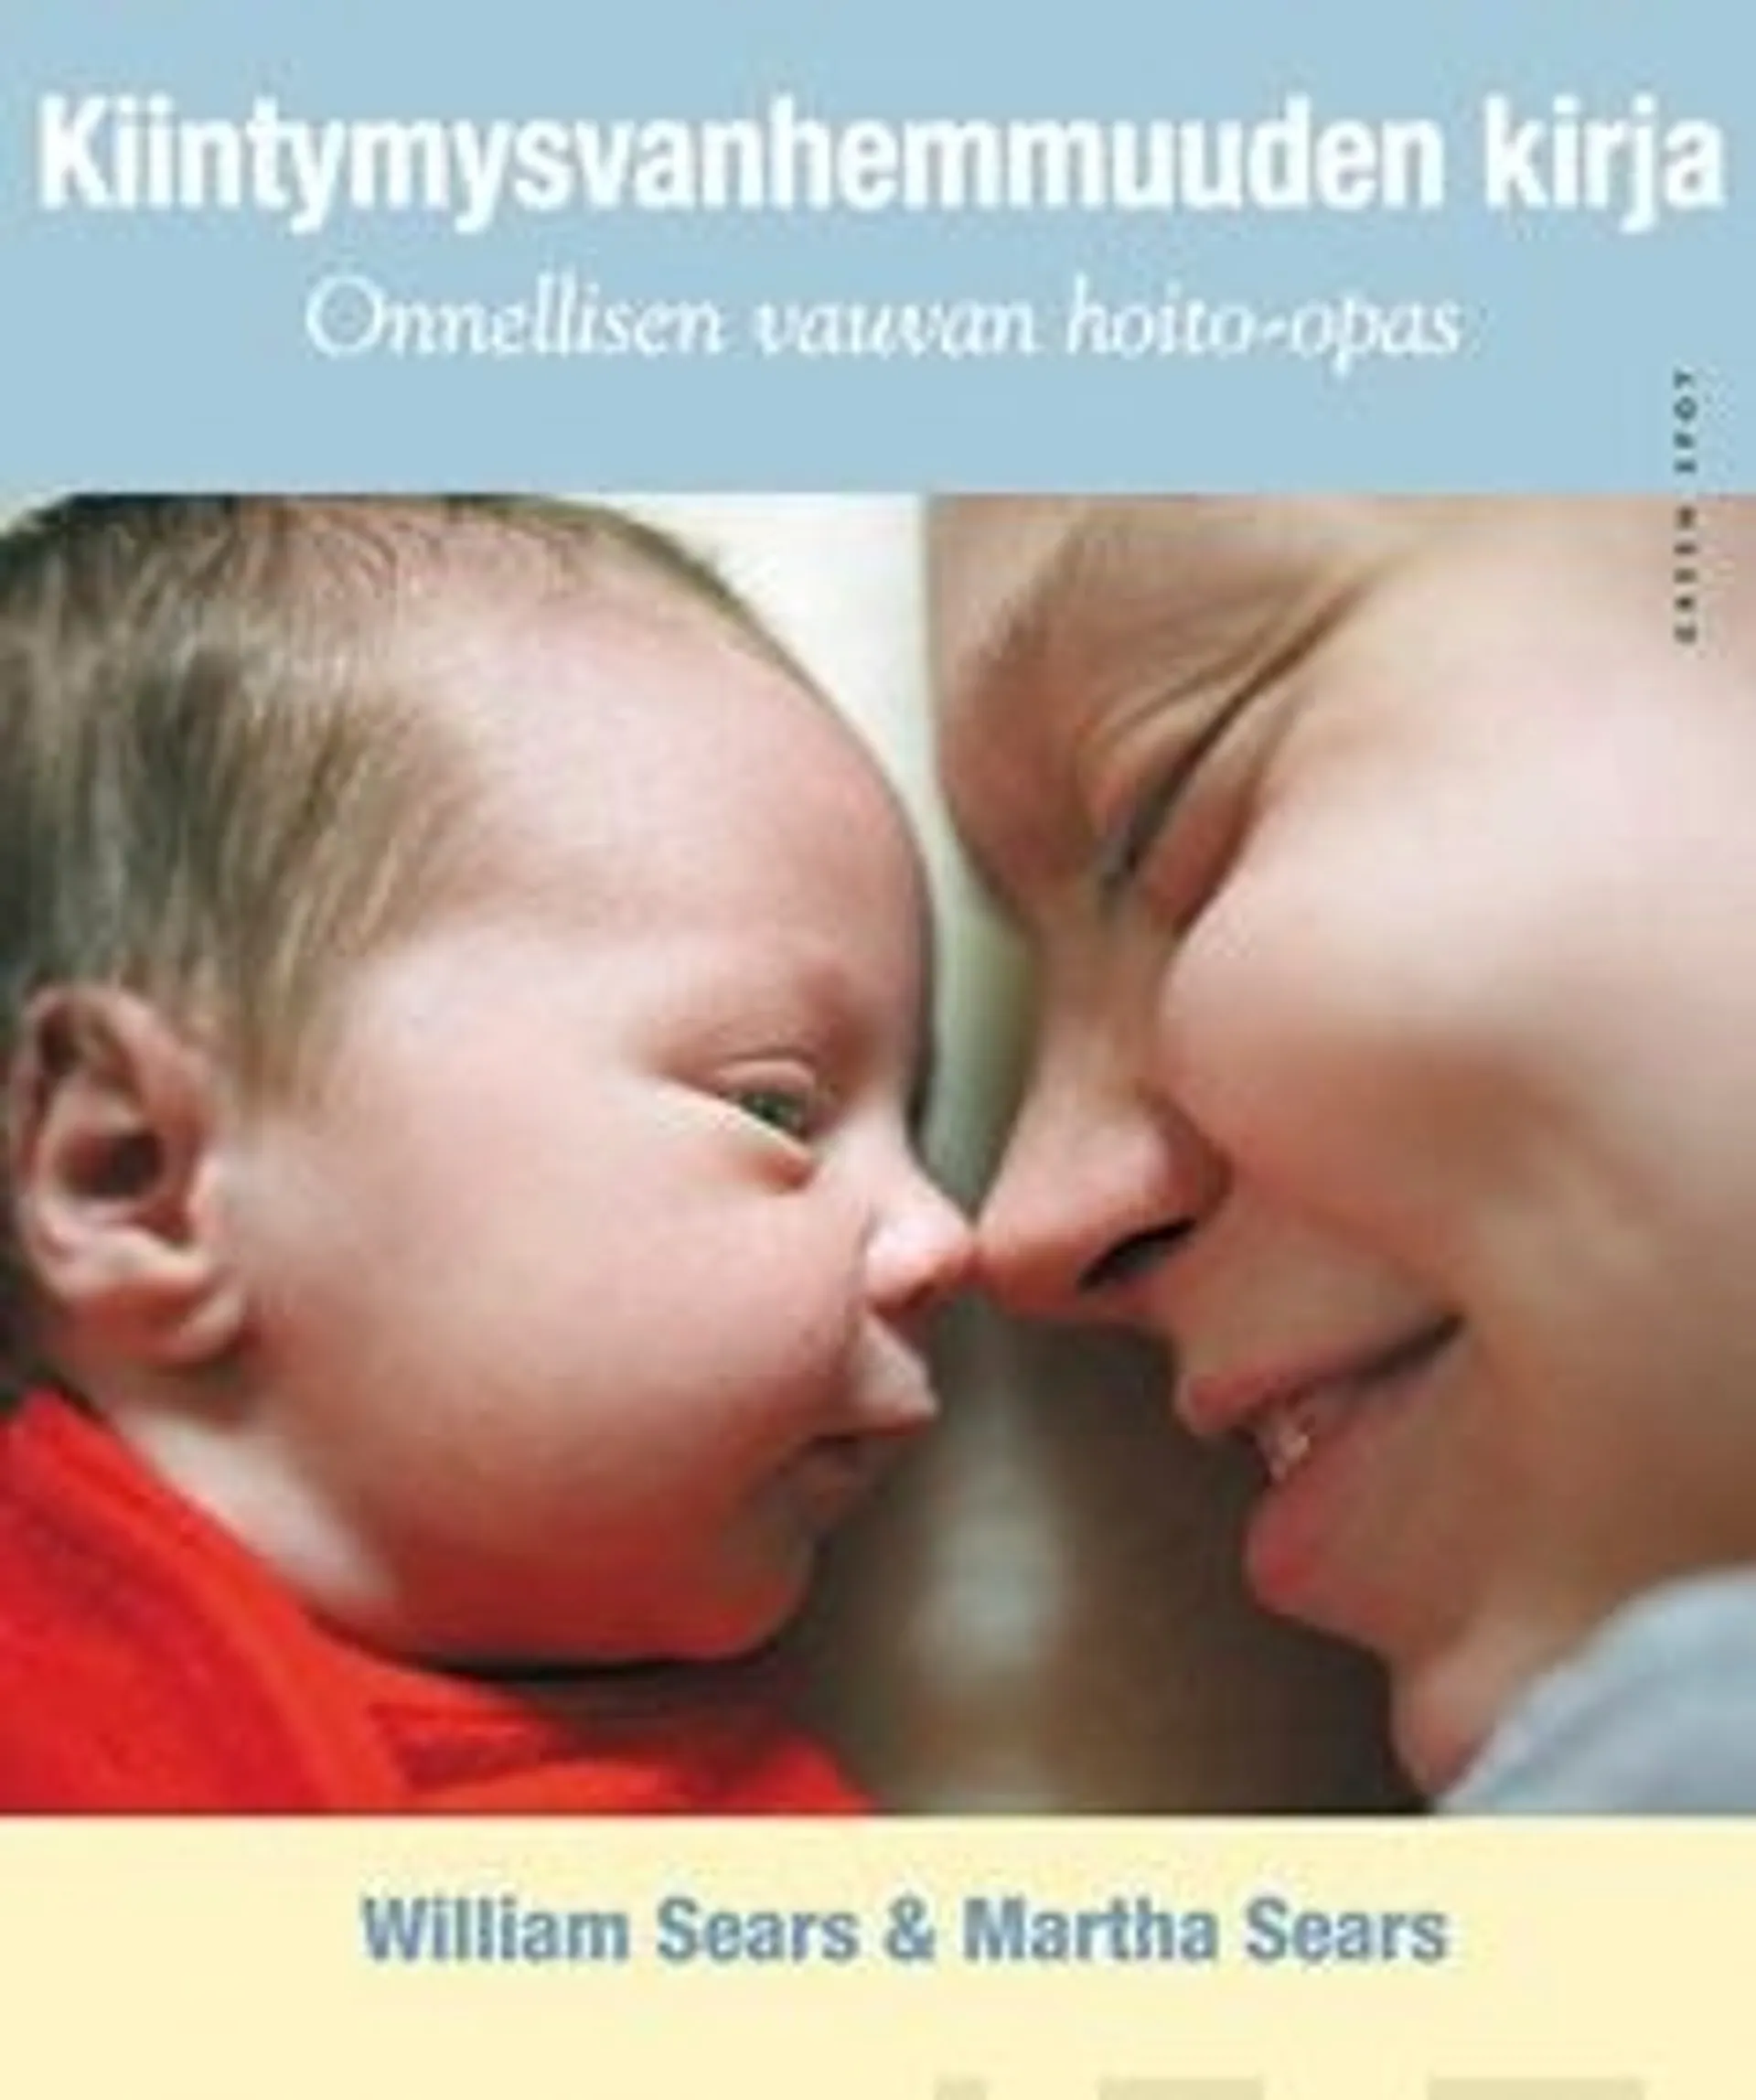 Sears, Kiintymysvanhemmuuden kirja - onnellisen vauvan hoito-opas